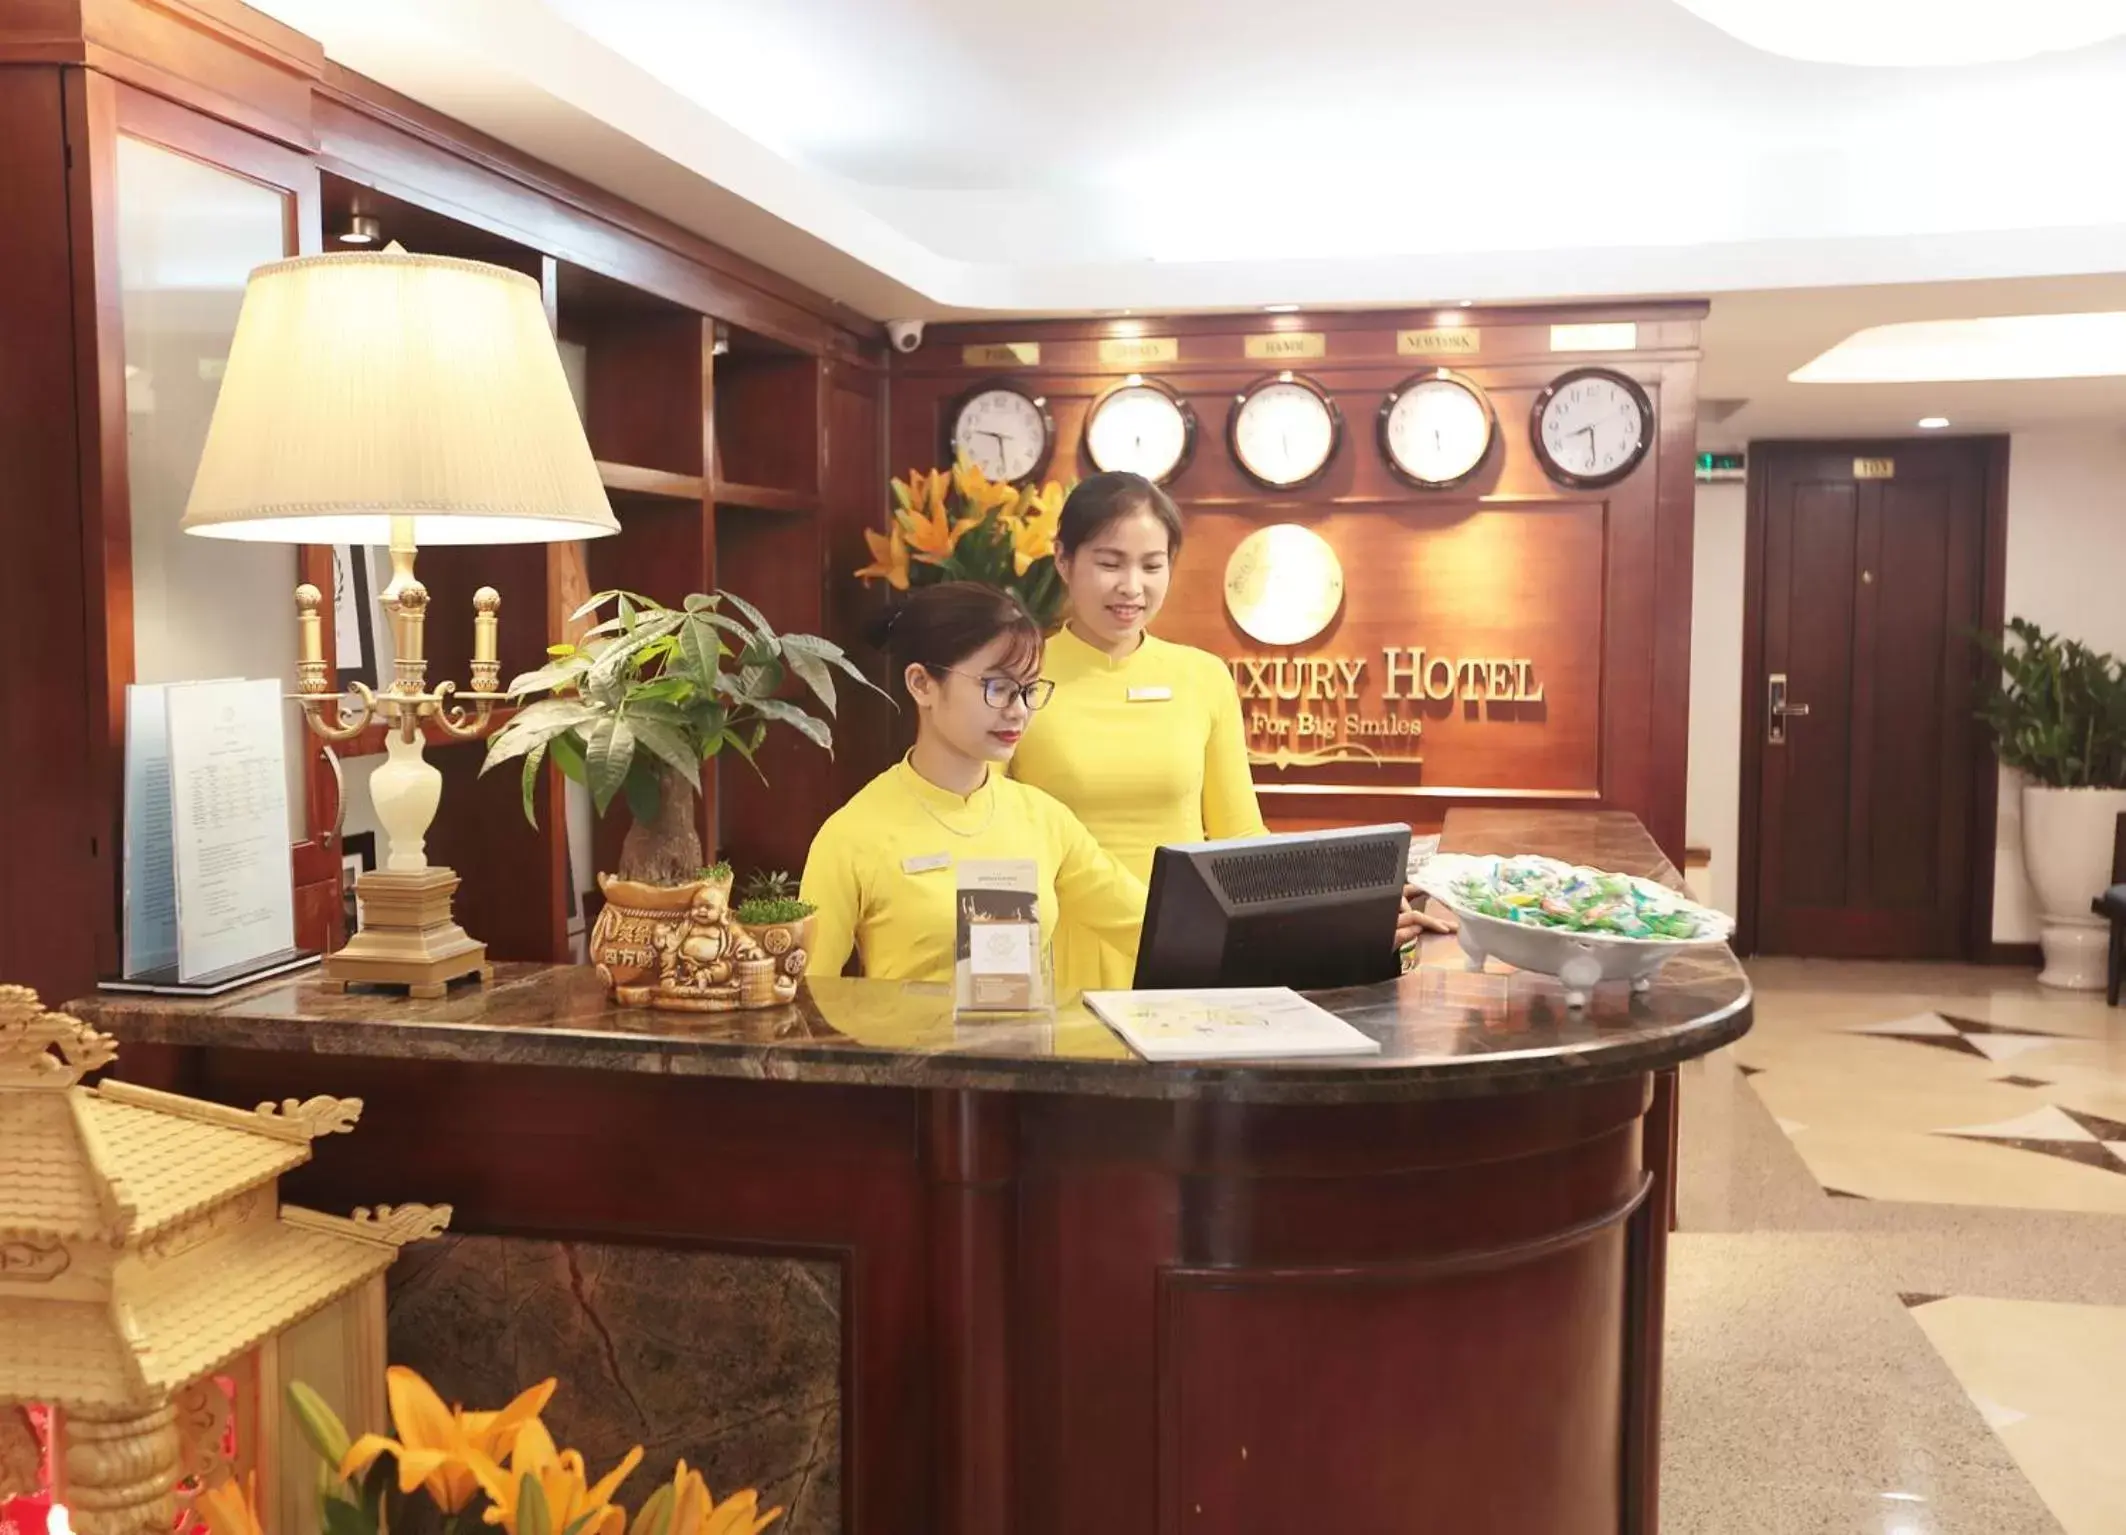 Lobby or reception, Lobby/Reception in Hanoi Siva Luxury Hotel & Travel